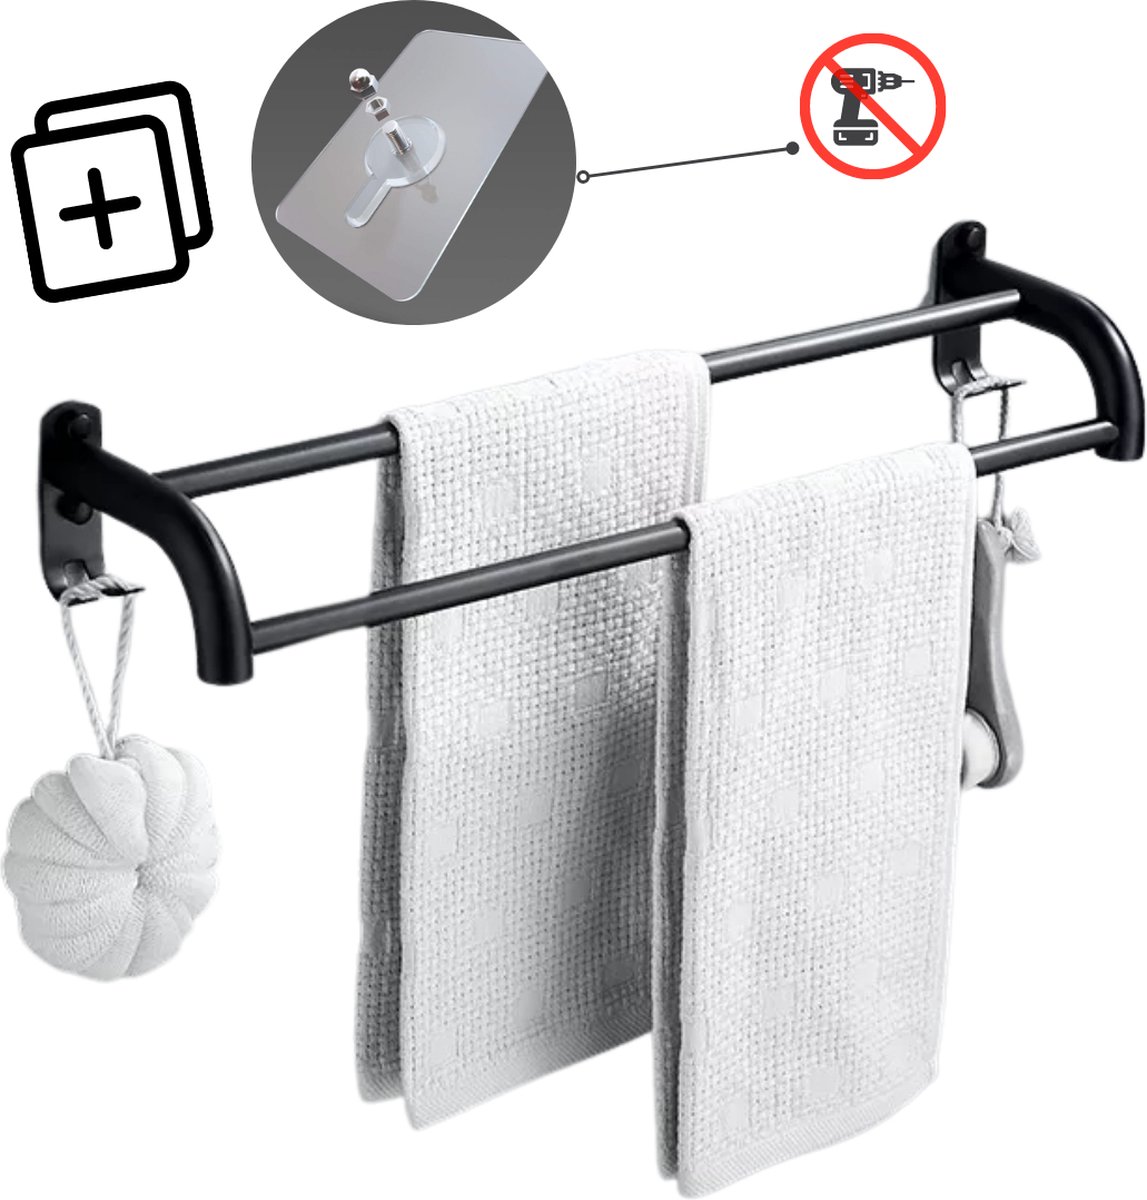 Handdoekrek zwart | Handdoekrek badkamer | Zonder boren of spijkers | Dubbele ronde stang | Handdoekrek zelfklevend | Handdoekstang | Handdoekhouder | Handdoekenrek